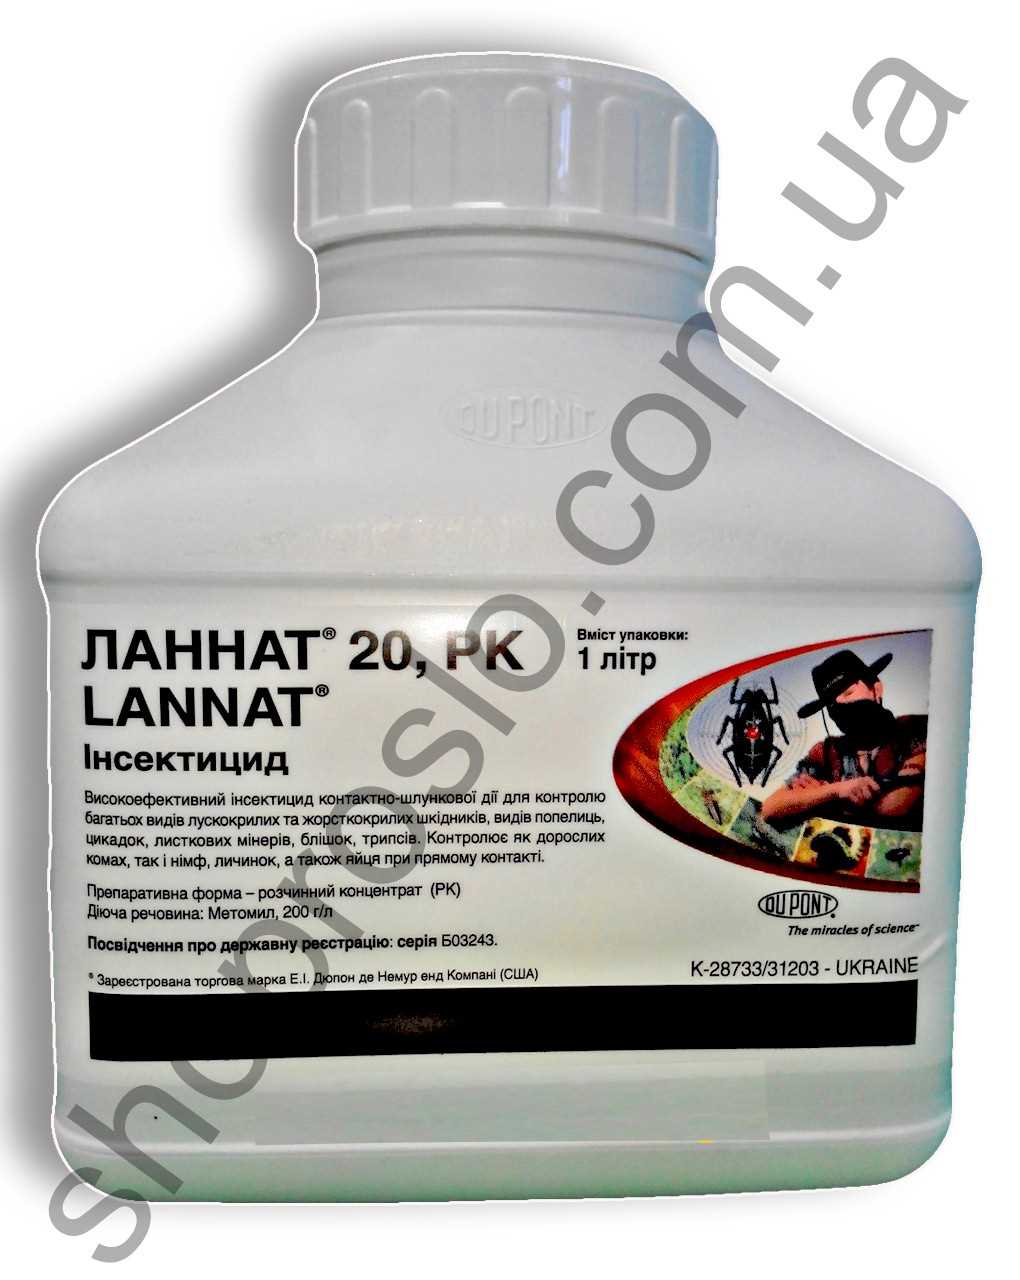 В чем состоит эффективность препарата Ланнат?